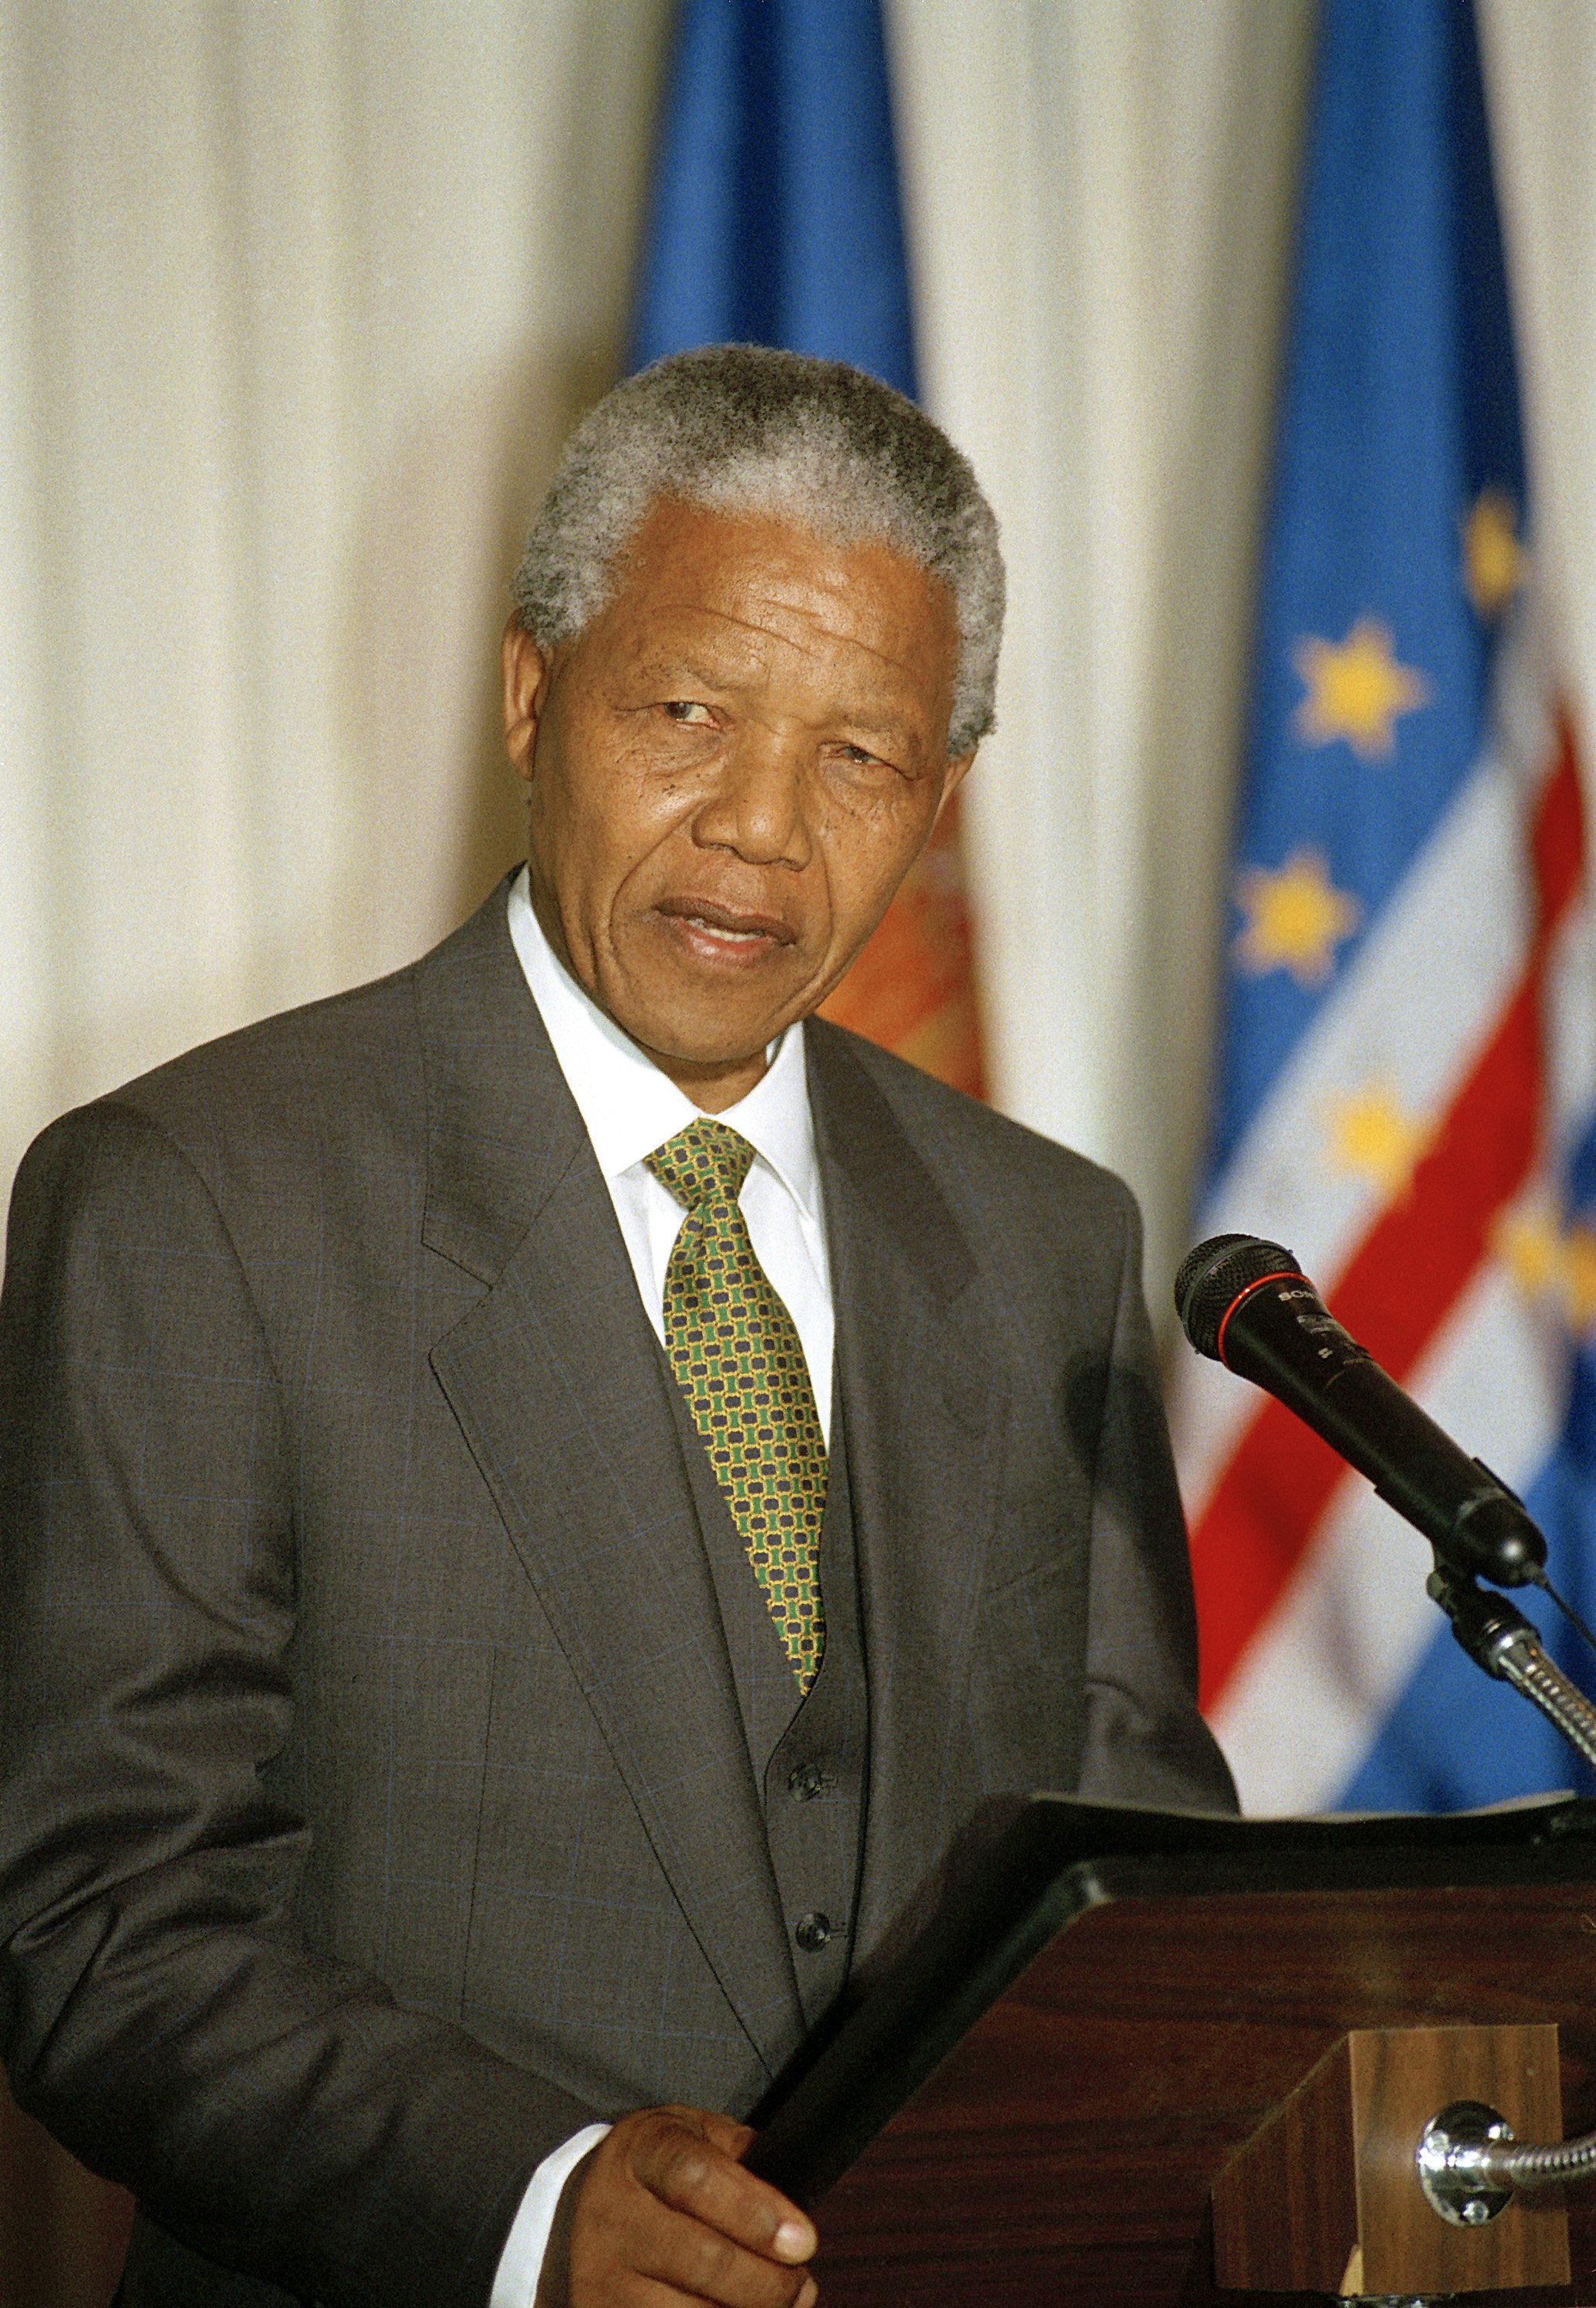 La libertad entre rejas: 'Cartas desde la prisión de Nelson Mandela'